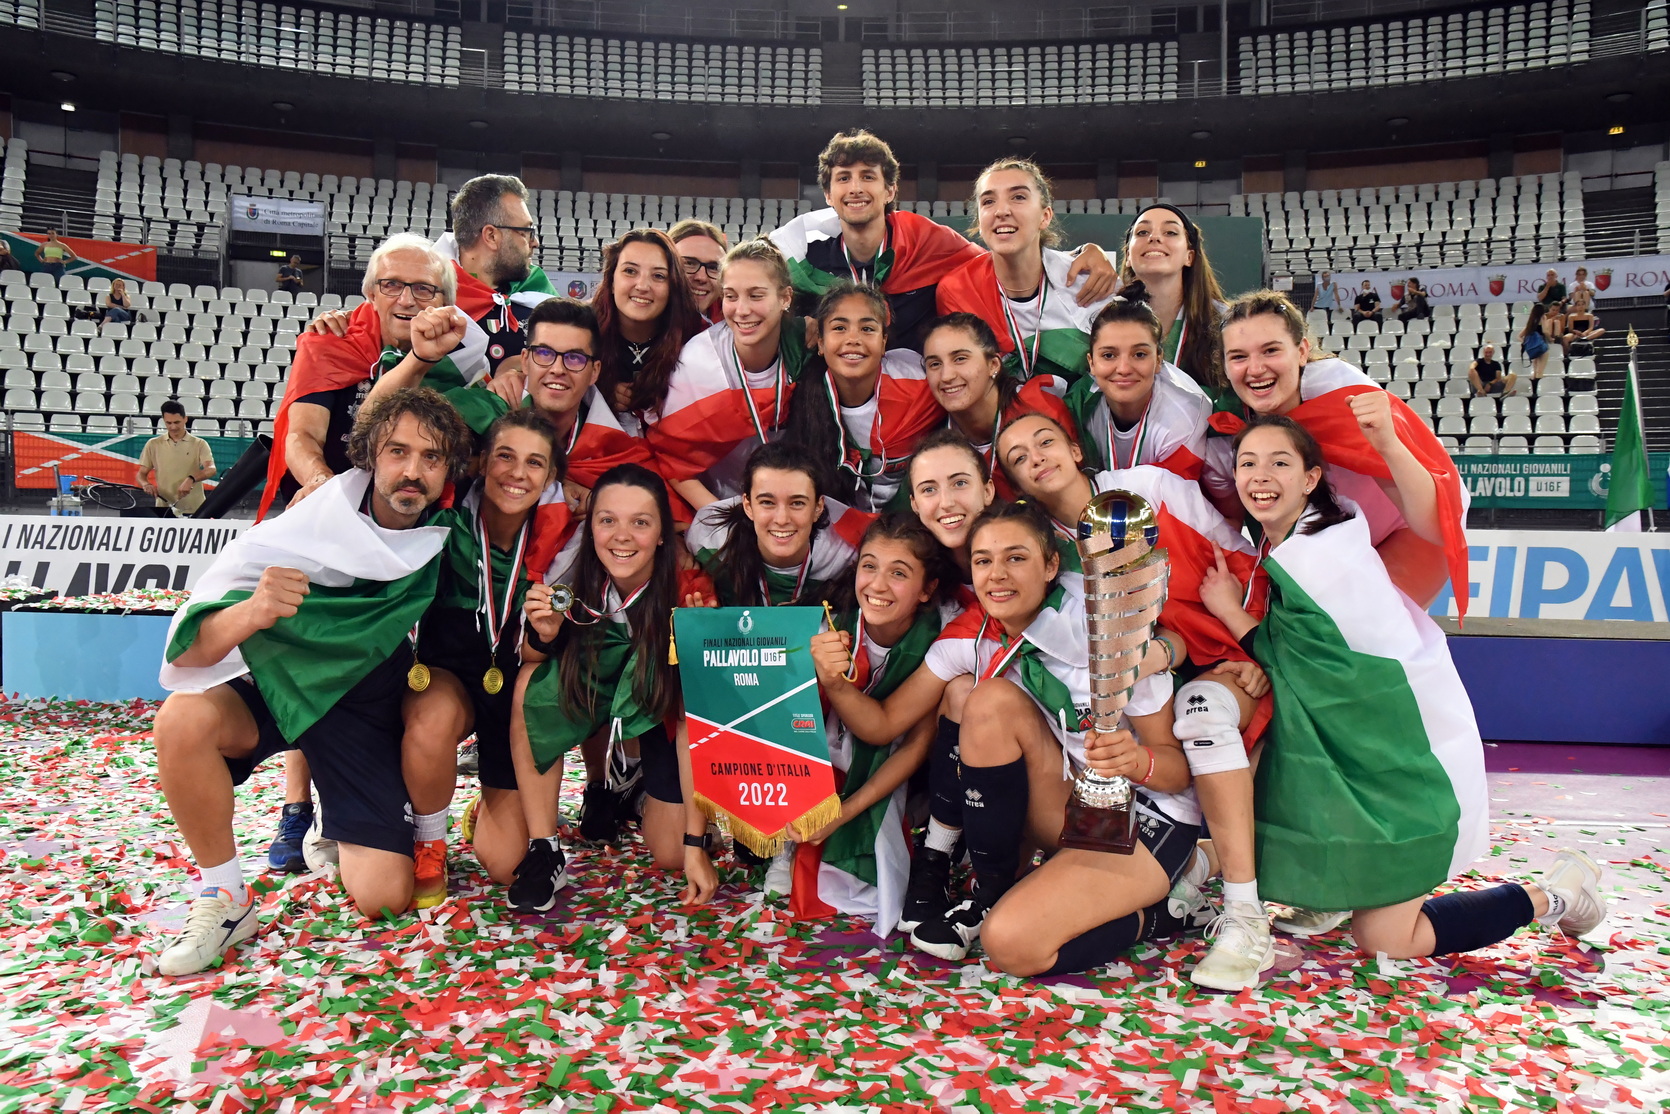 CAMBIANO – Le giocartici under 16 della In Volley, campionesse d’Italia di pallavolo